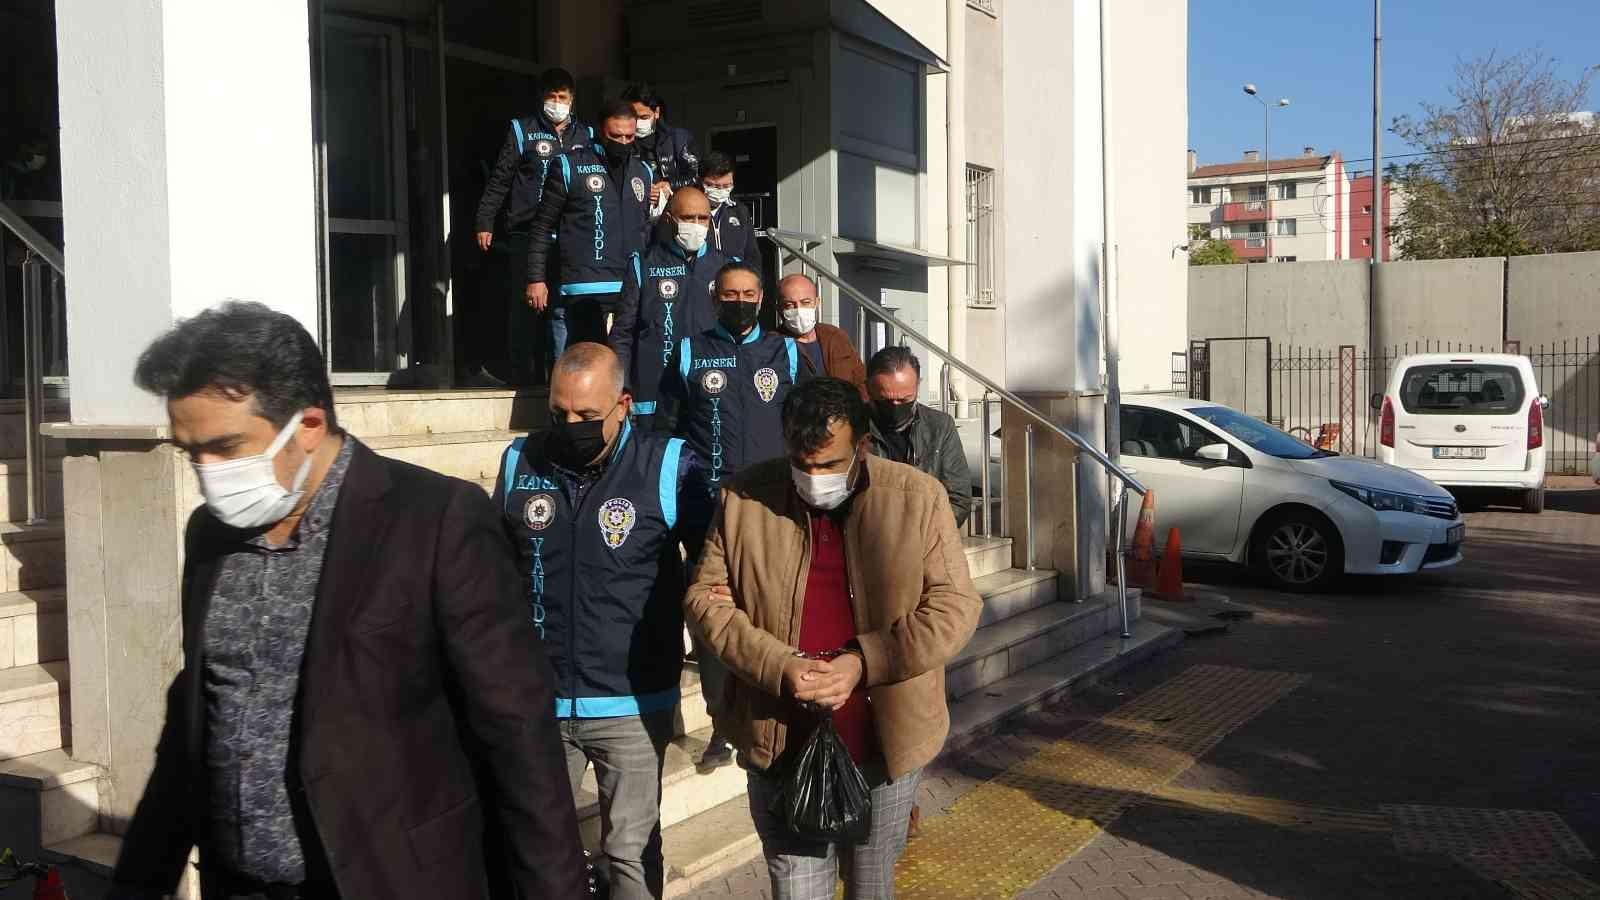 Kayseri’de 7.5 milyonluk ’temiz sayfa’ operasyonunda 16 tutuklama #kayseri